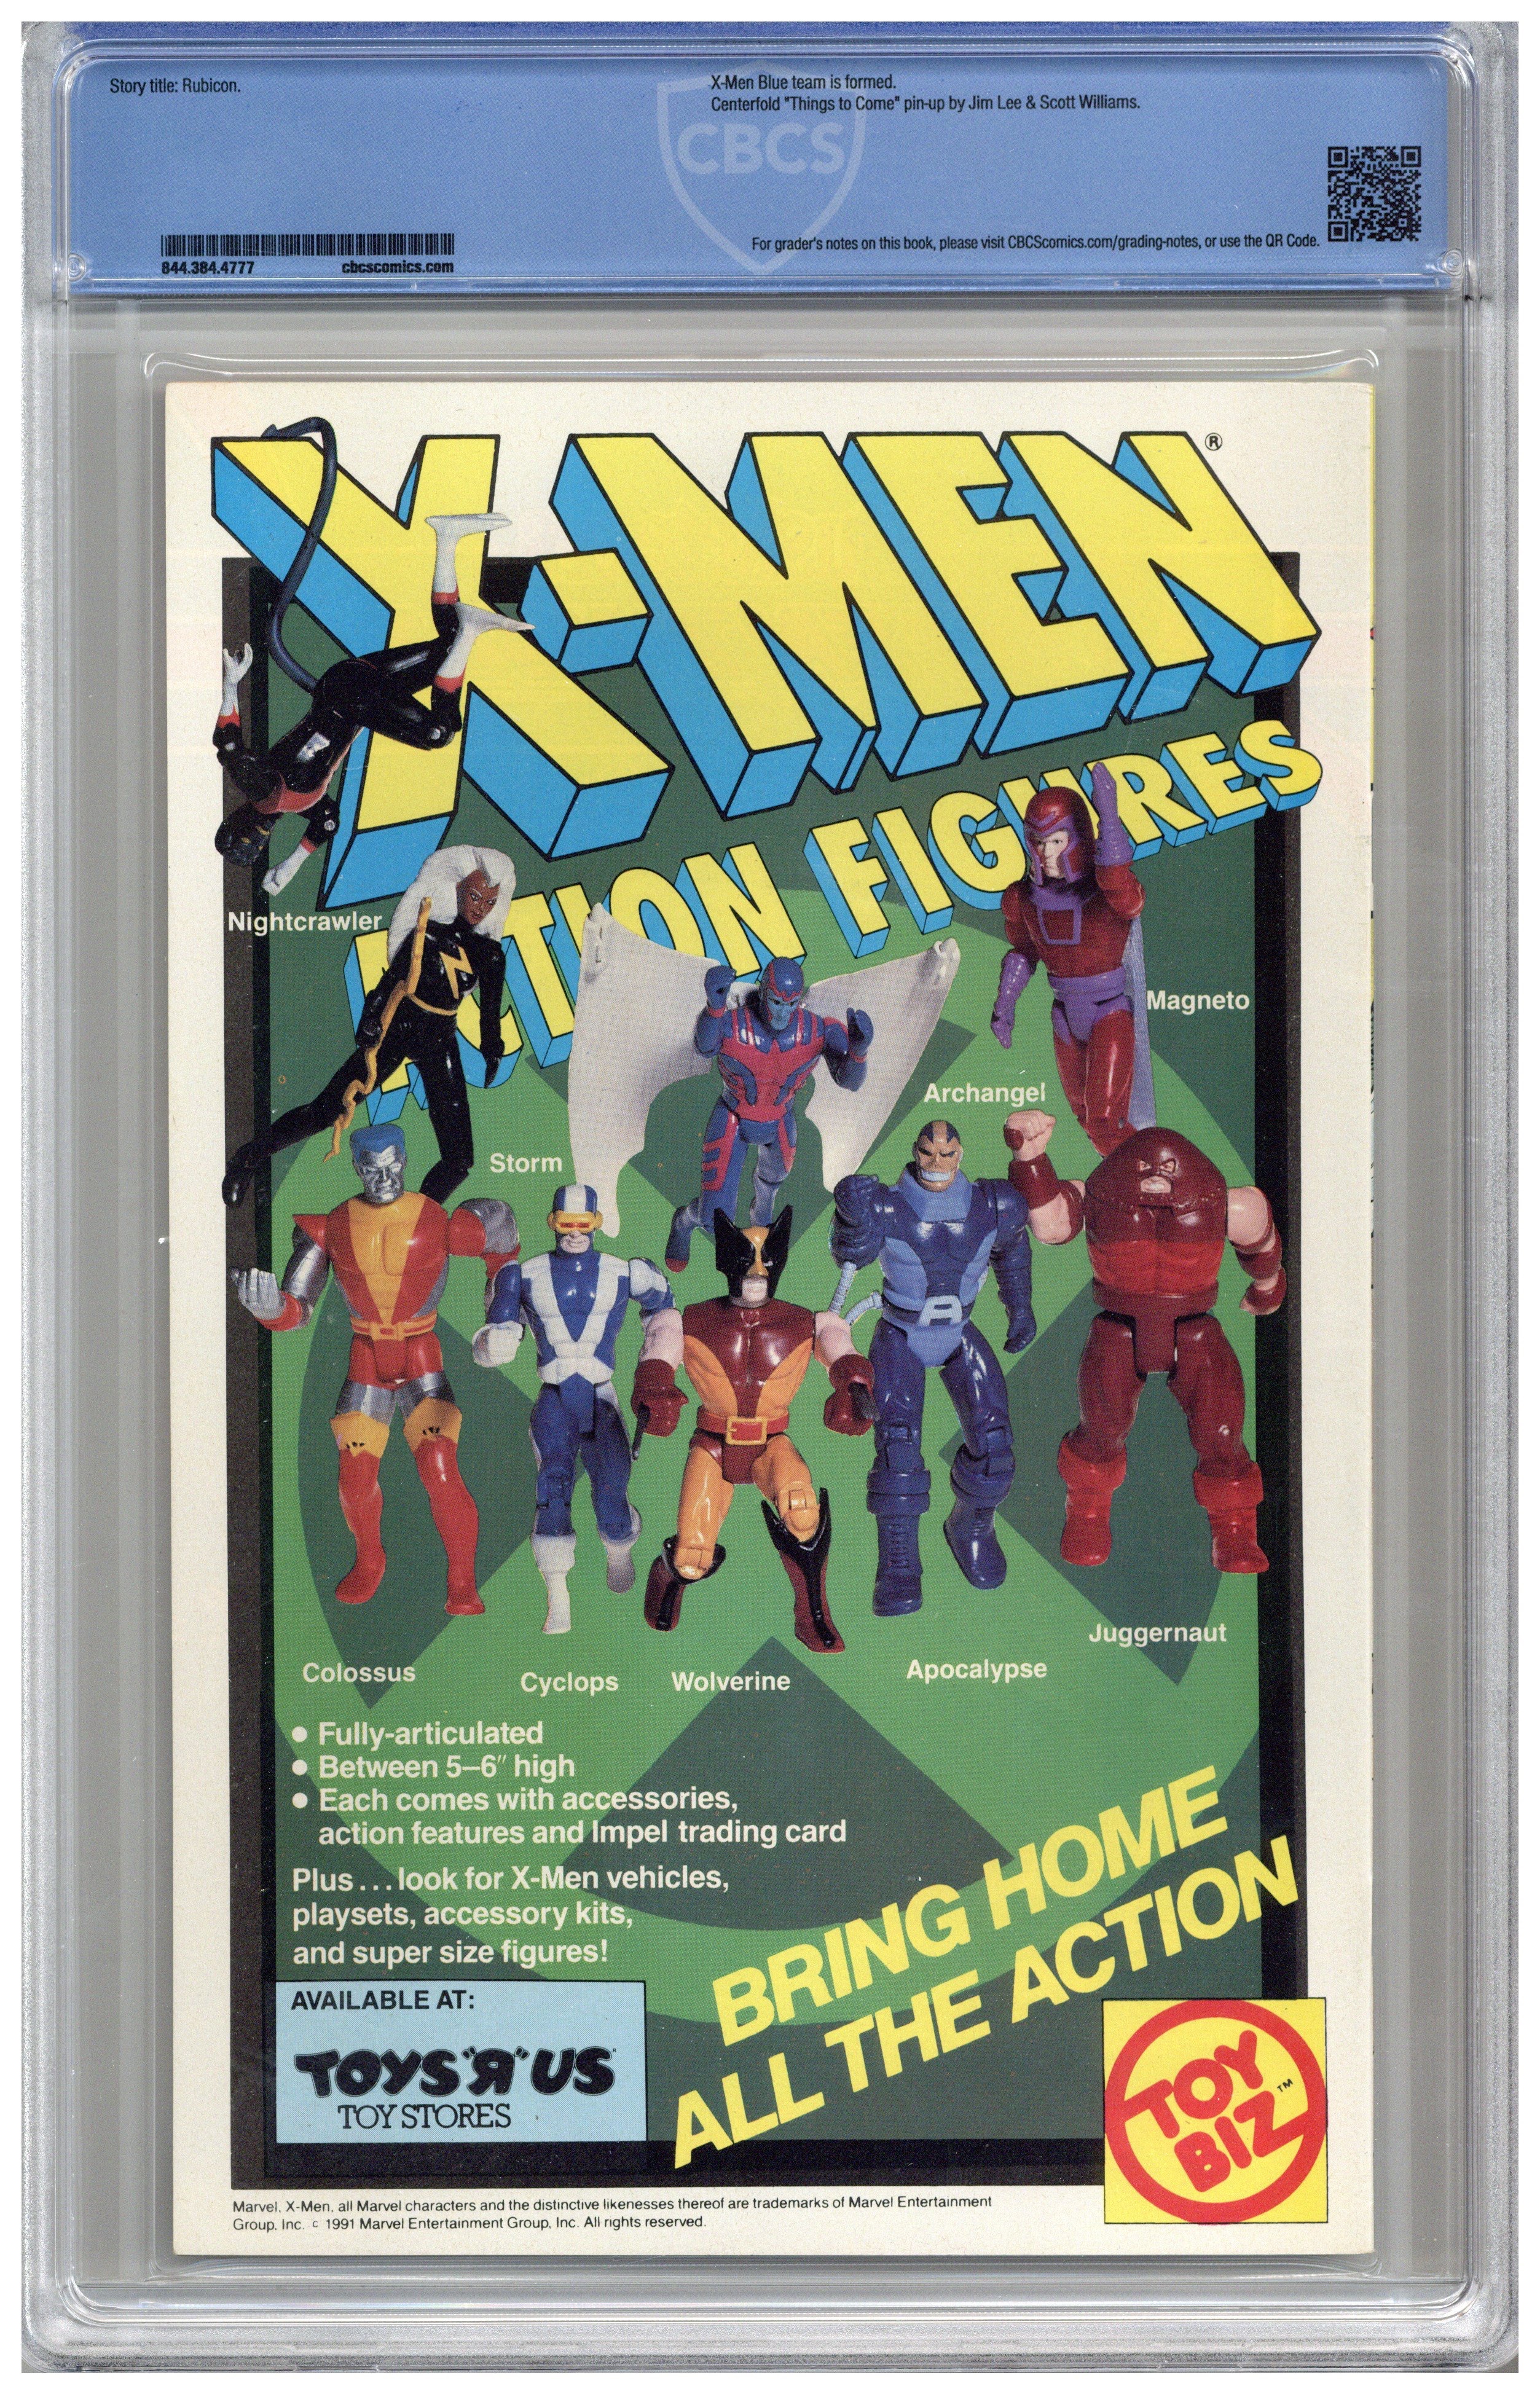 X-Men vol 2 / Issue #1 | Comics Details | Four Color Comics